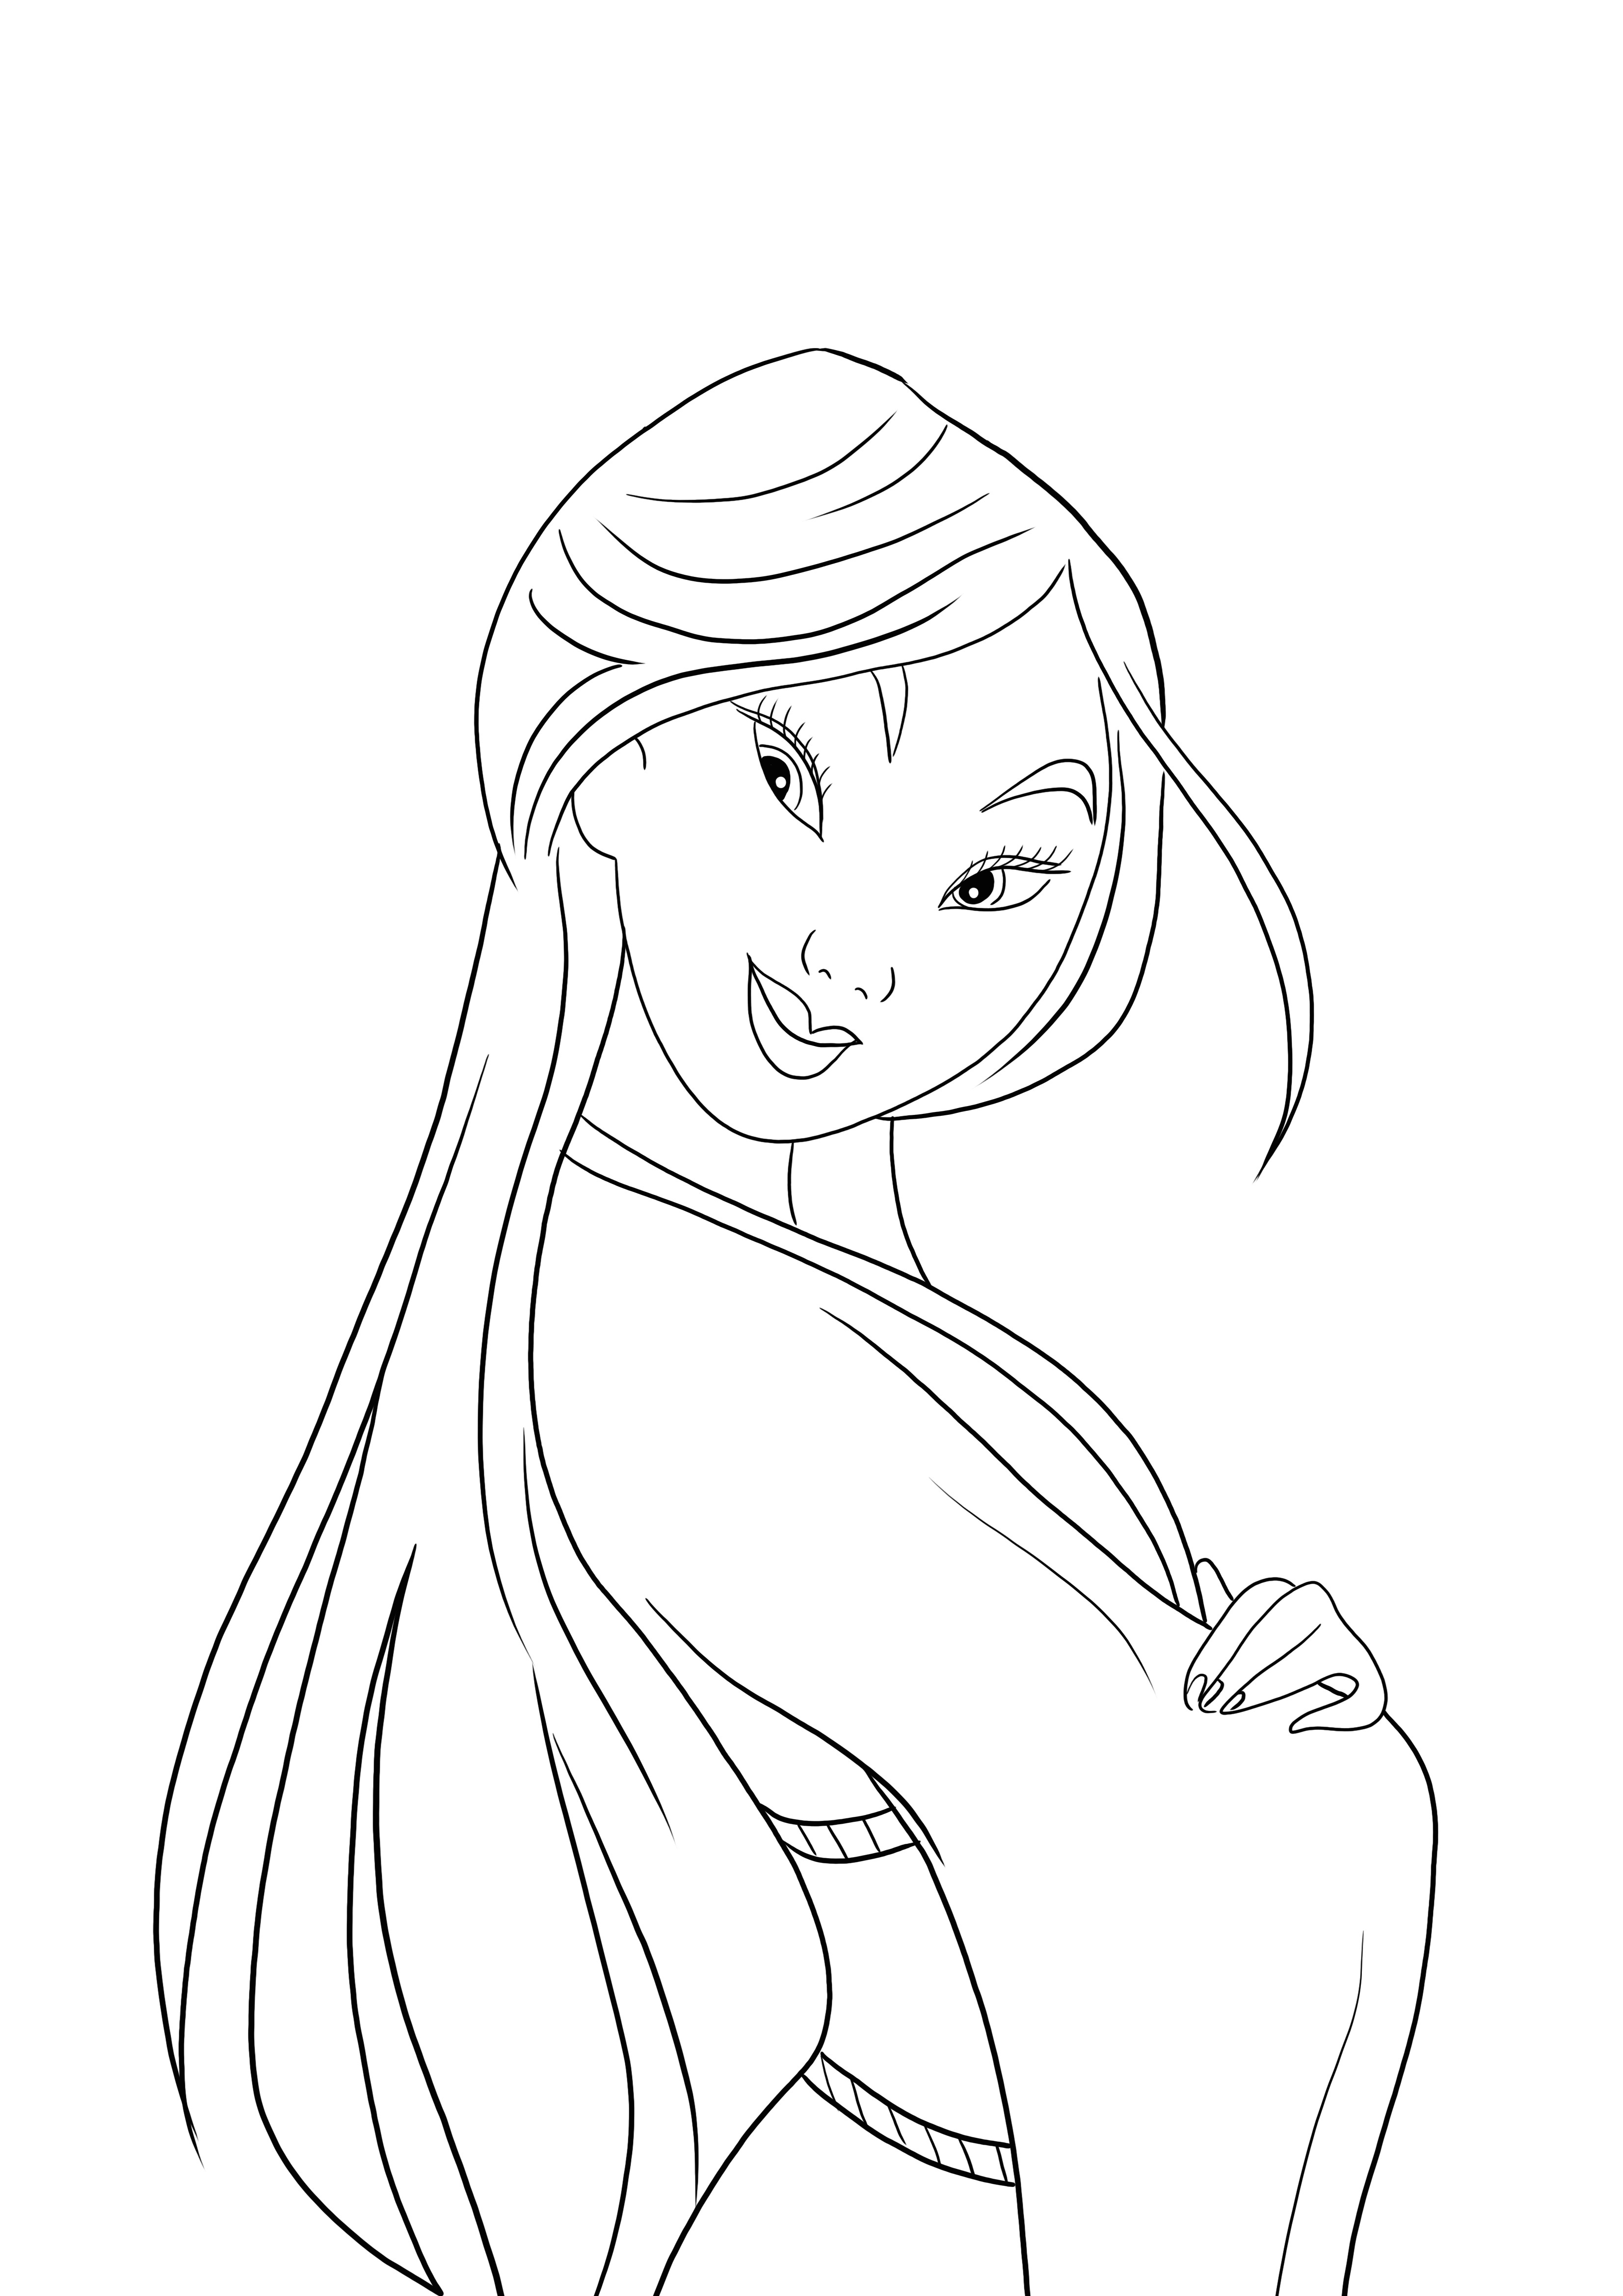 Nossa imagem para colorir da bela Mulan está aqui para você imprimir gratuitamente